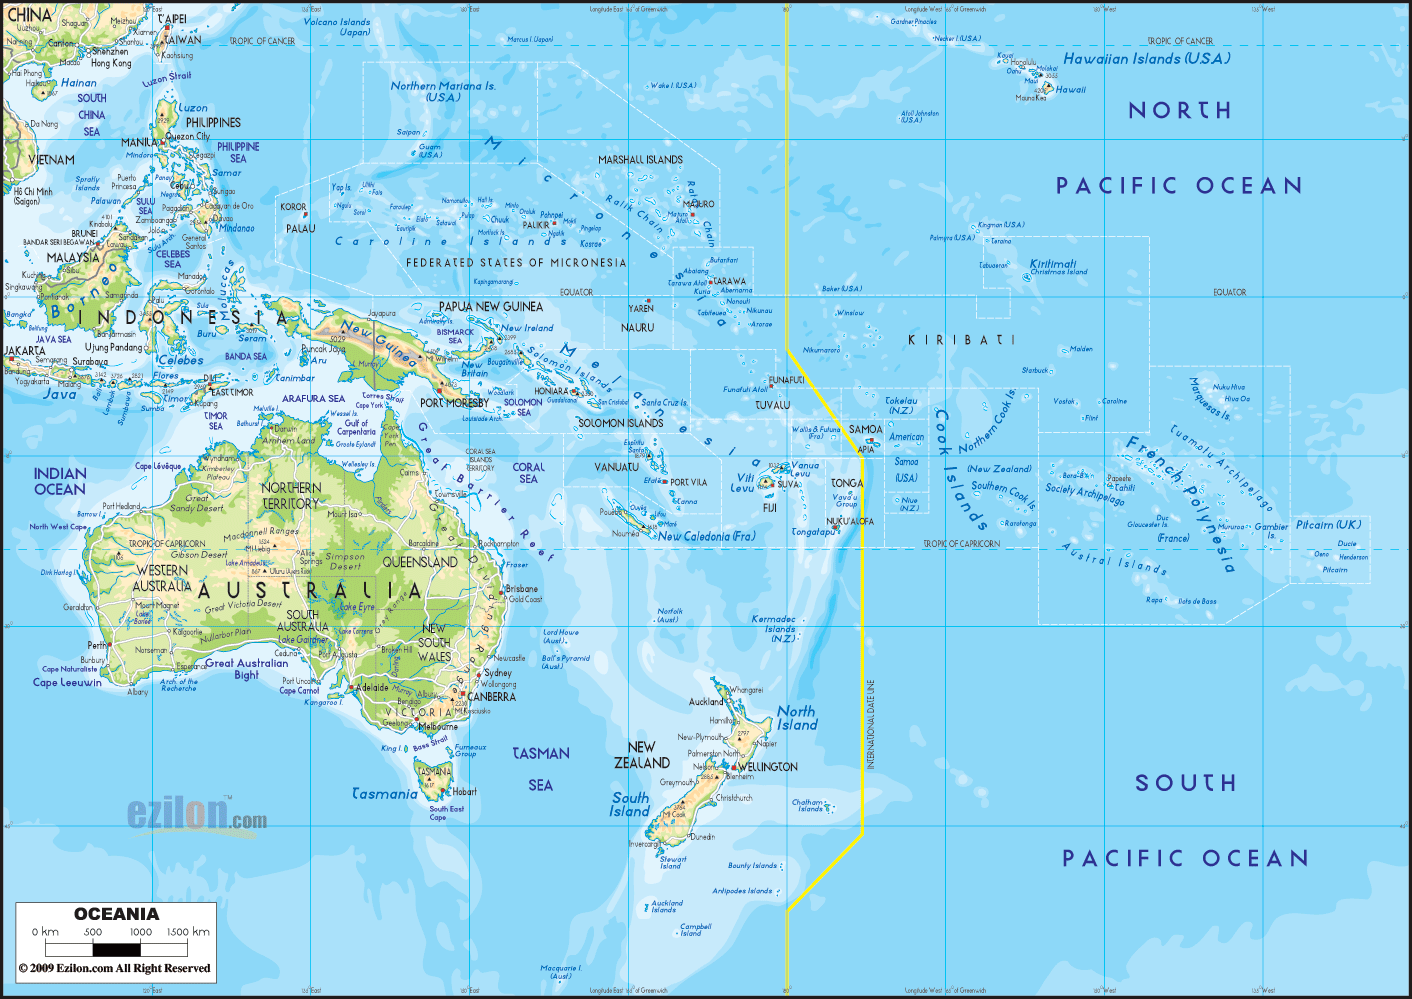 http://www.ezilon.com/maps/images/Oceania_phy1.gif